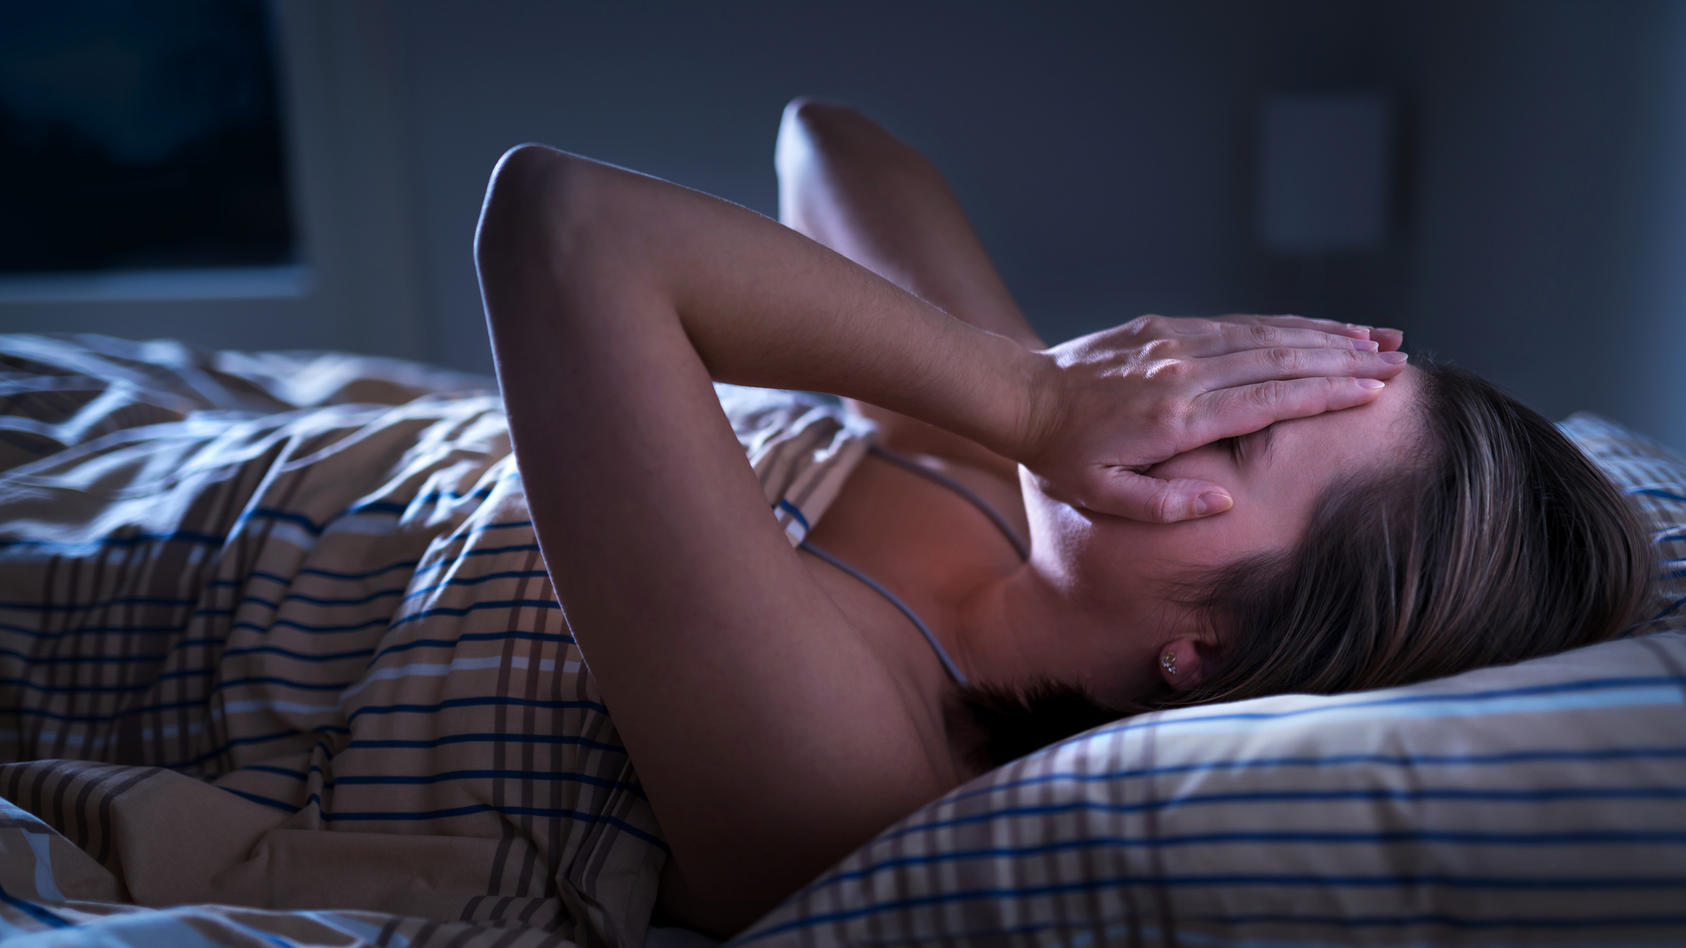 Warum erscheinen uns Sorgen nachts meist viel schlimmer?